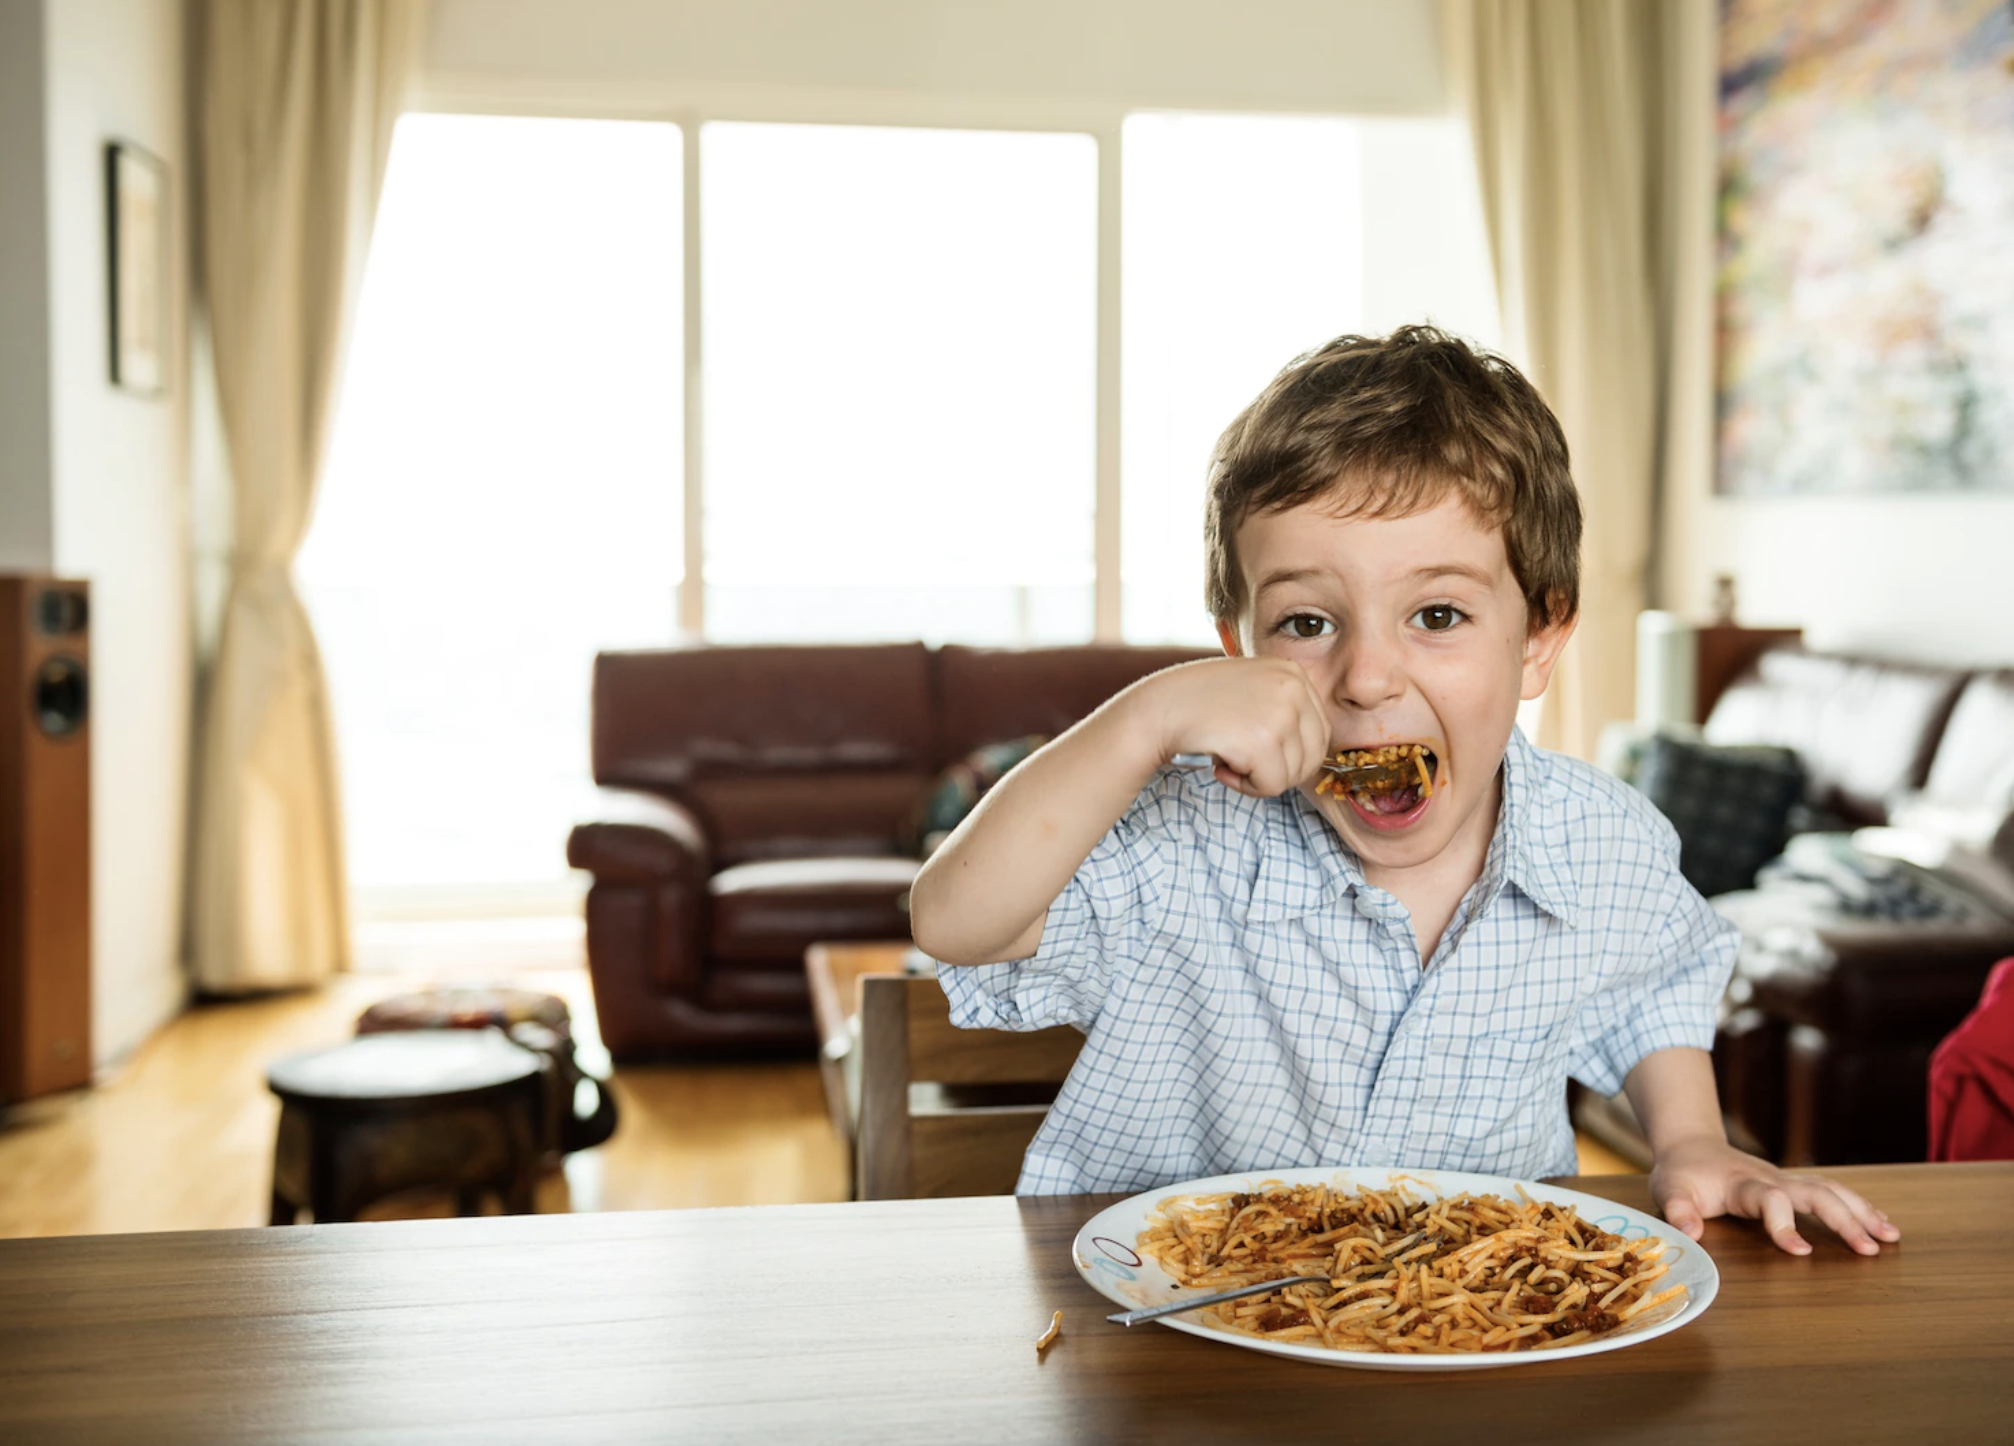 Не надо торопить ребёнка за столом, пусть тщательно пережёвывает пищу — так он будет в состоянии следить за чувством насыщения. Фото © Freepik